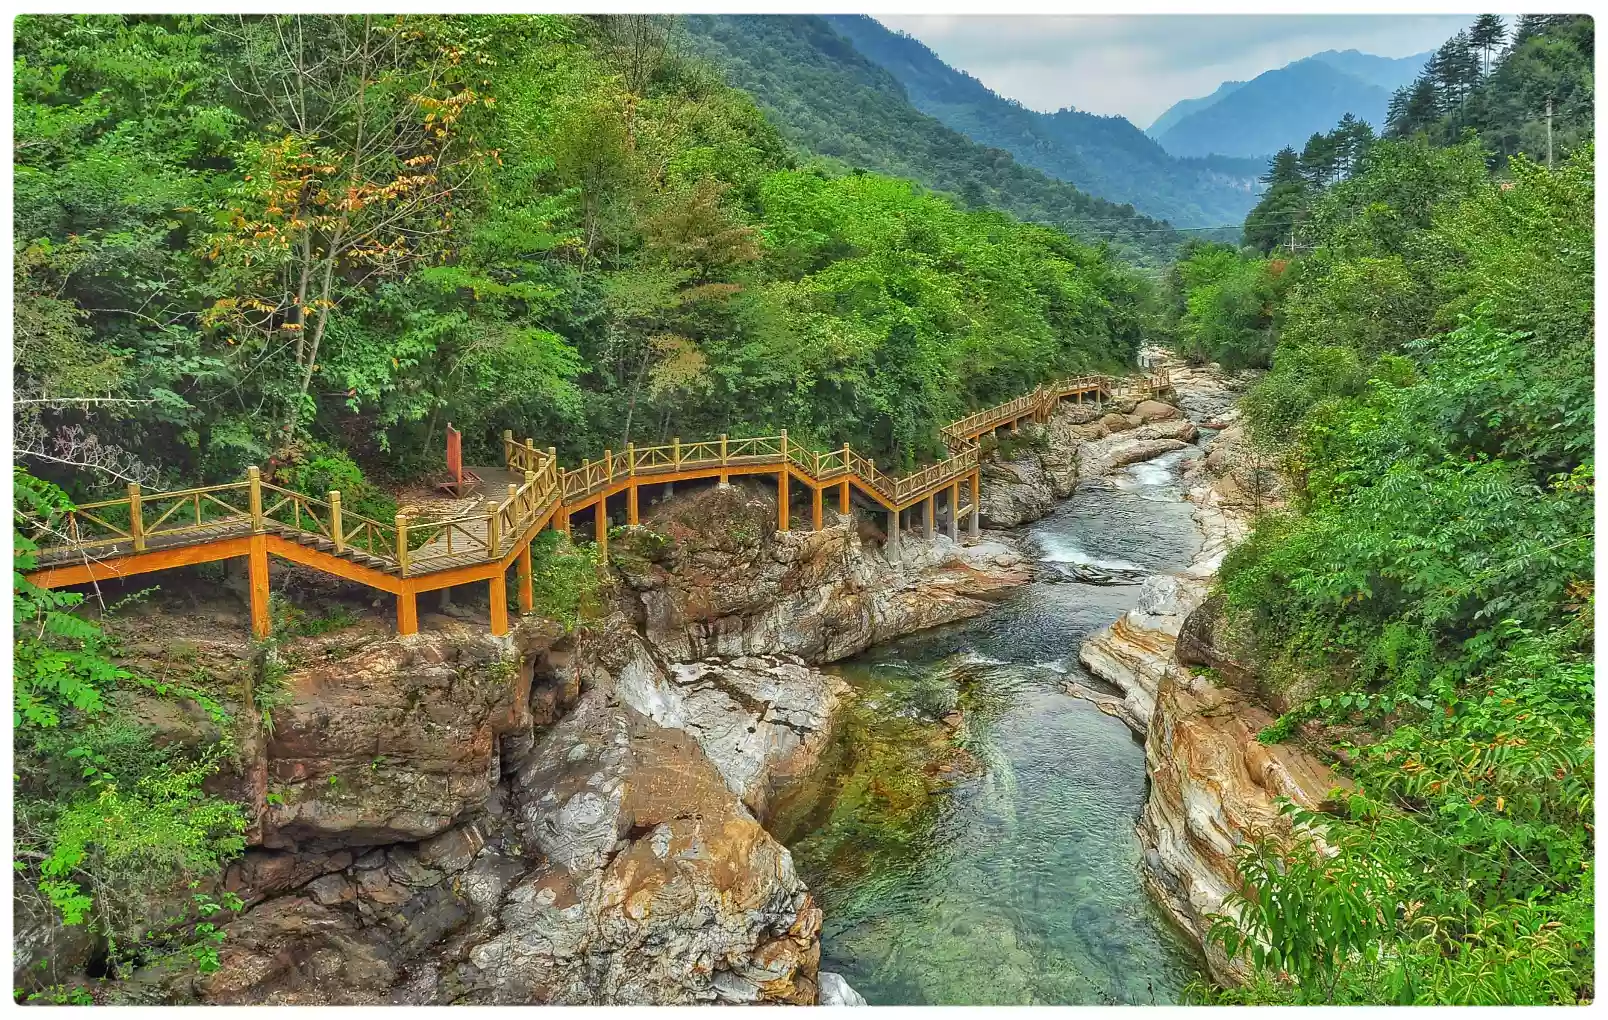 寻找陕西最美生态空间 |黄柏塬国家级自然保护区 - 丝路中国 - 中国网